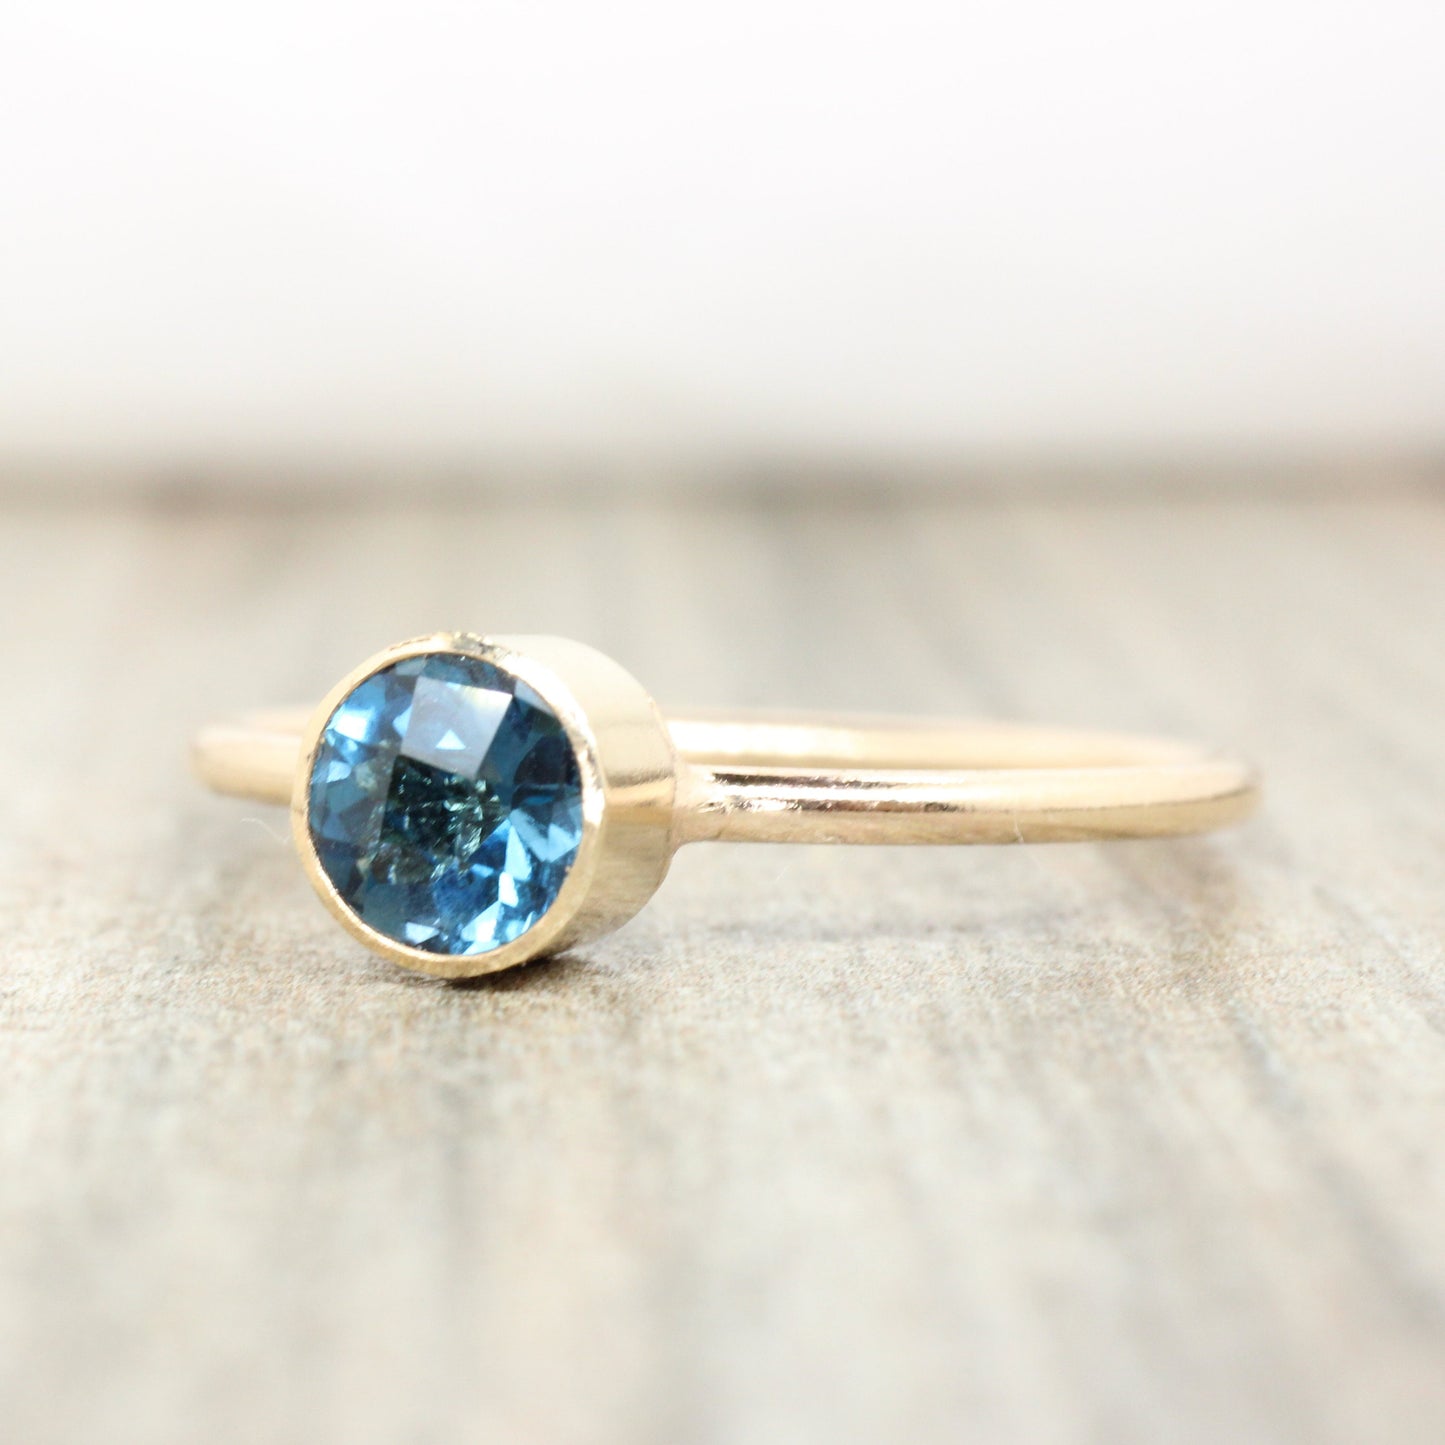 14K Gold Filled London Blue Topaz Ring // 5mm Faceted Gemstone December Birthstone